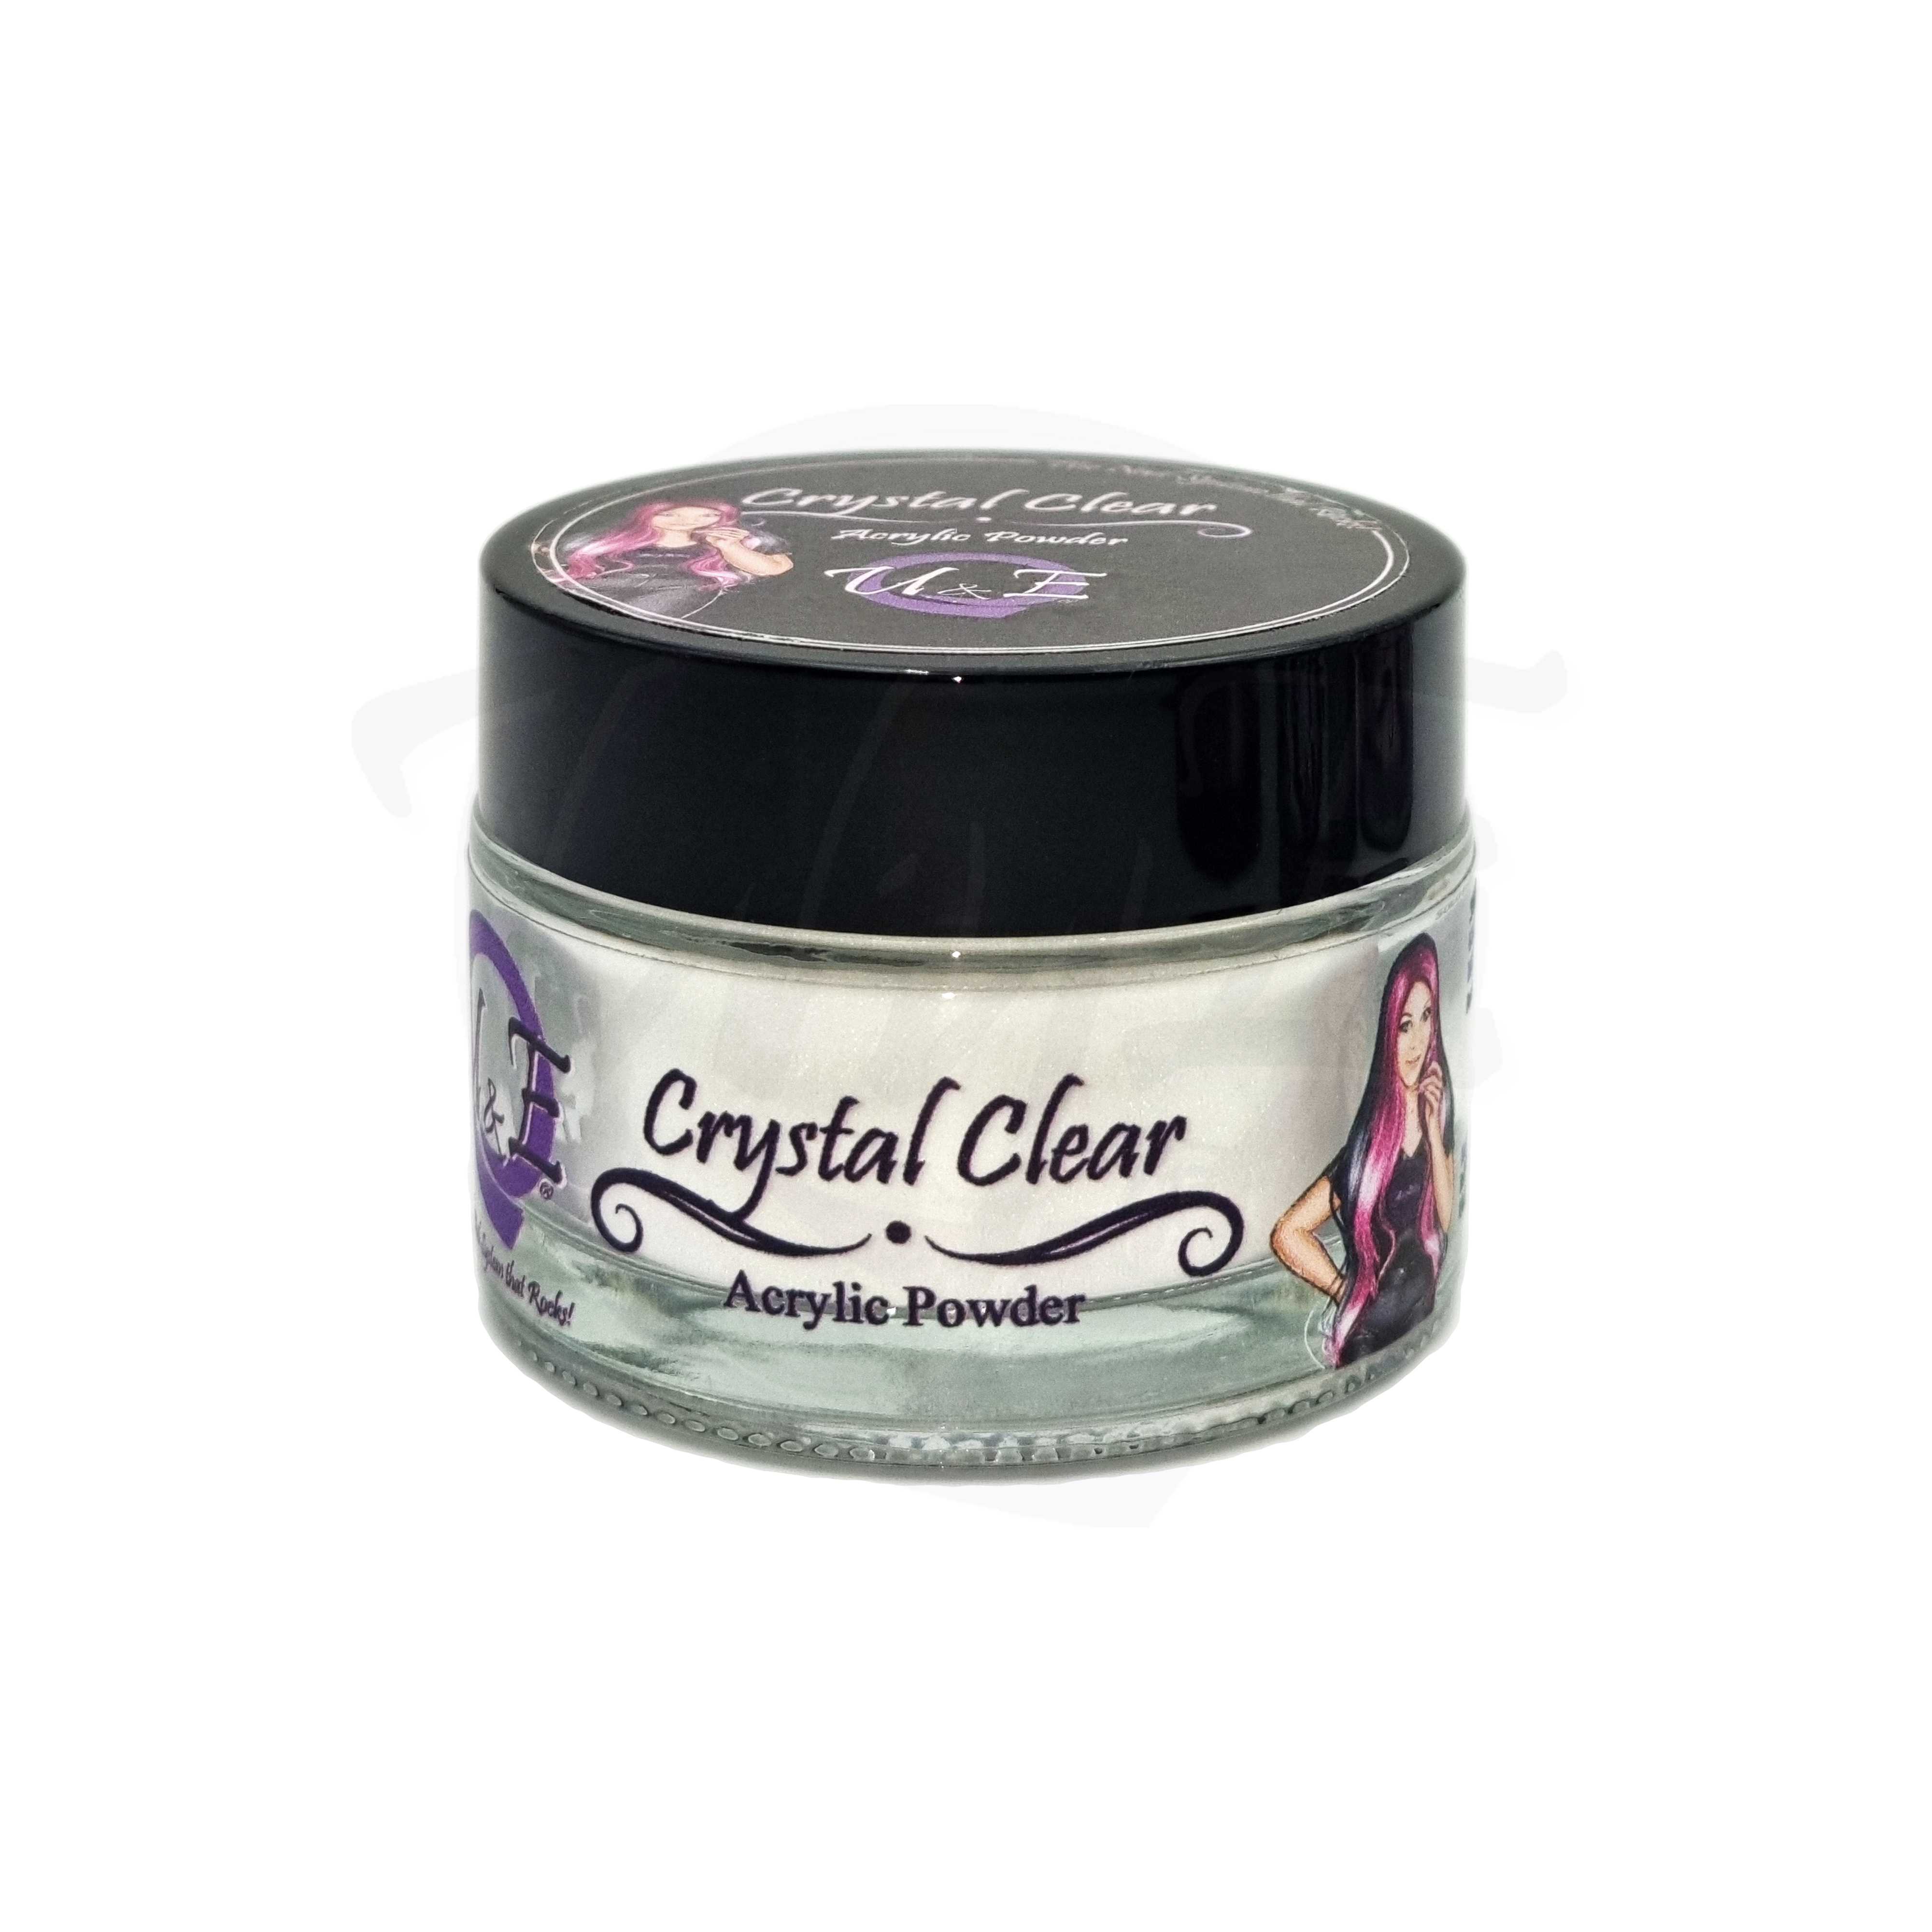 Acrylic powder - Crystal Clear